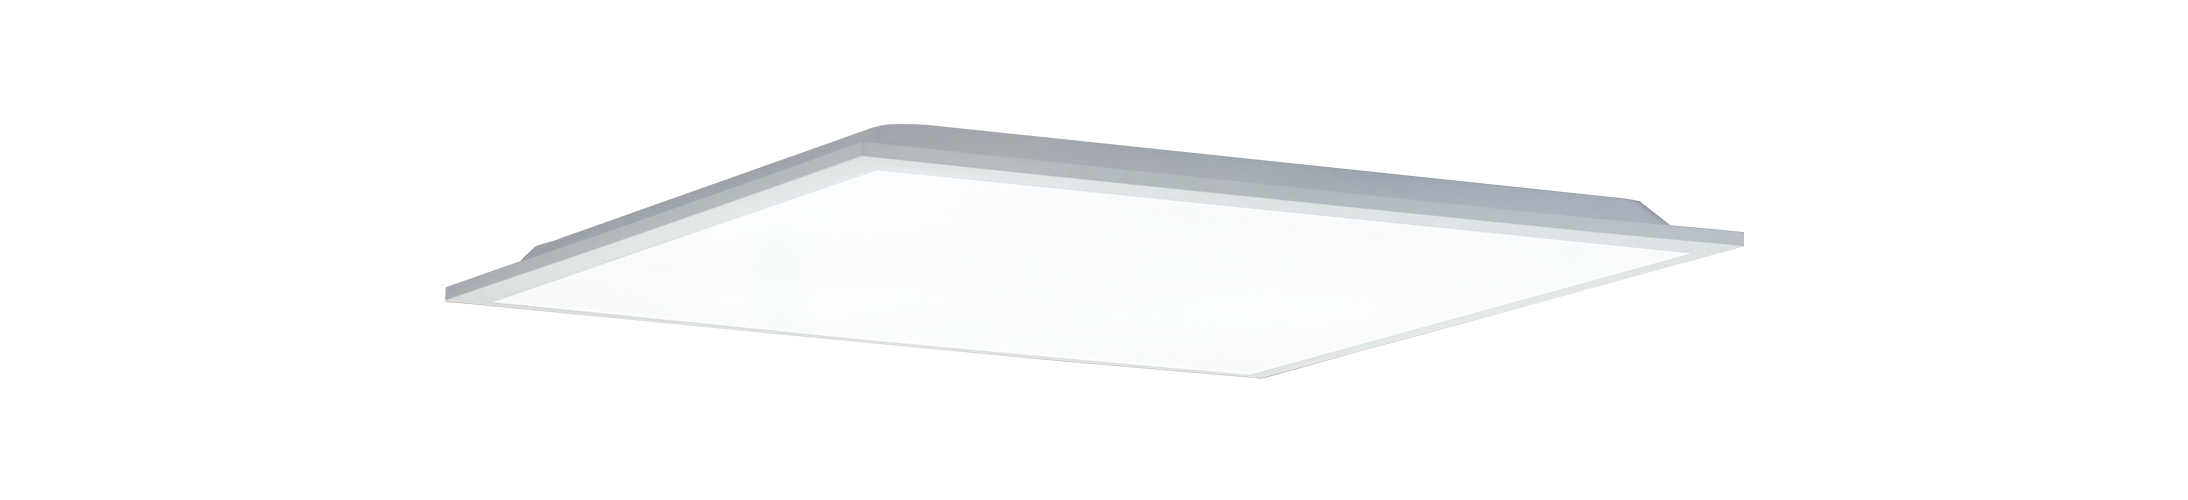 Hoye LED Flat Panel